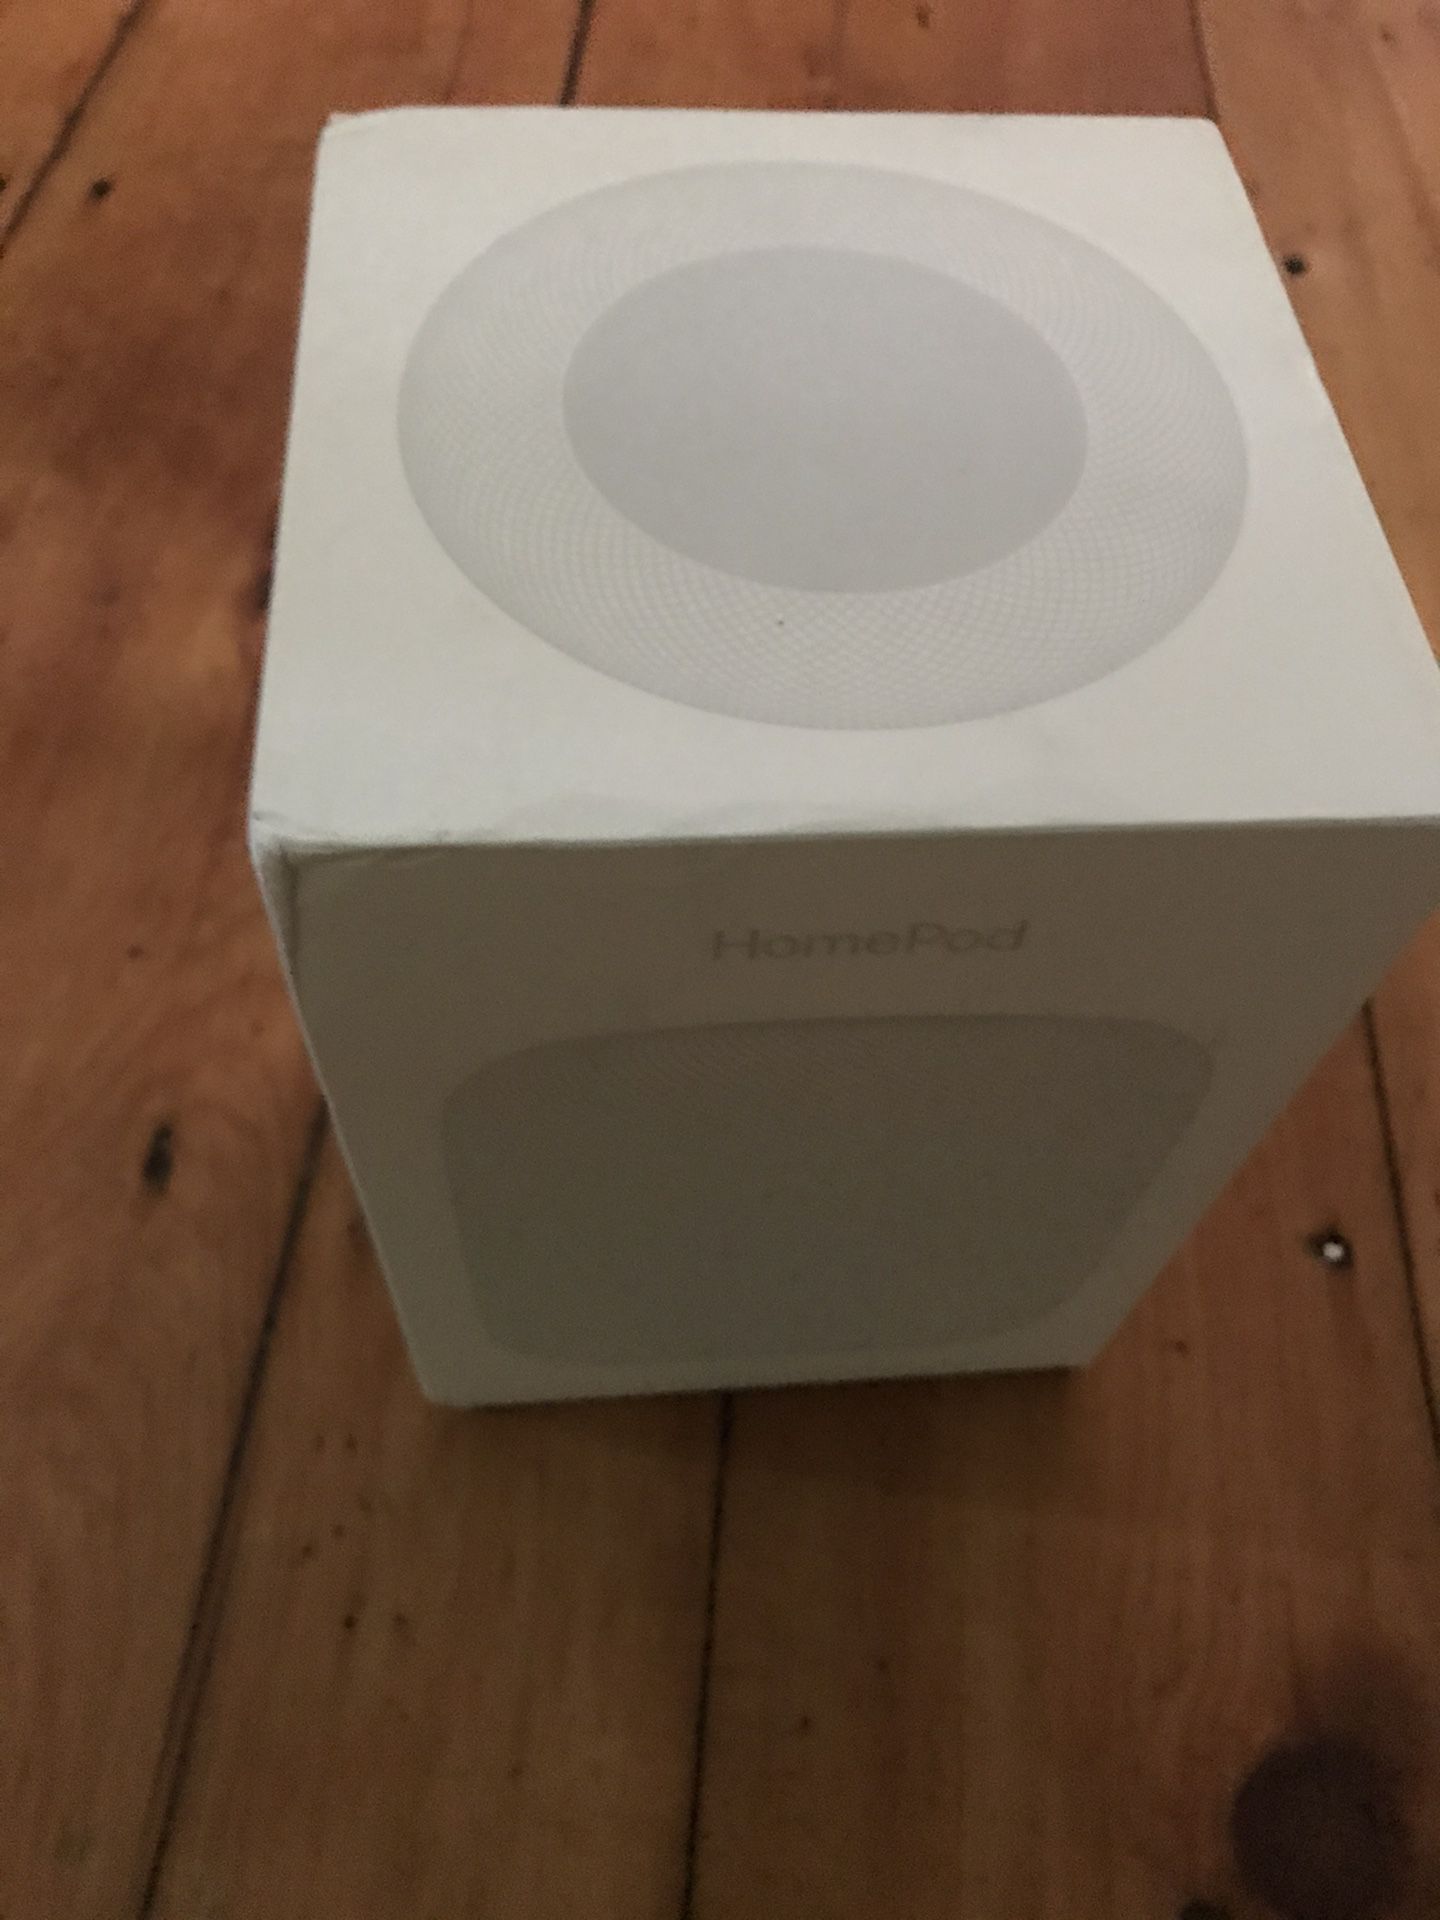 Apple HomePod Wireless Speaker